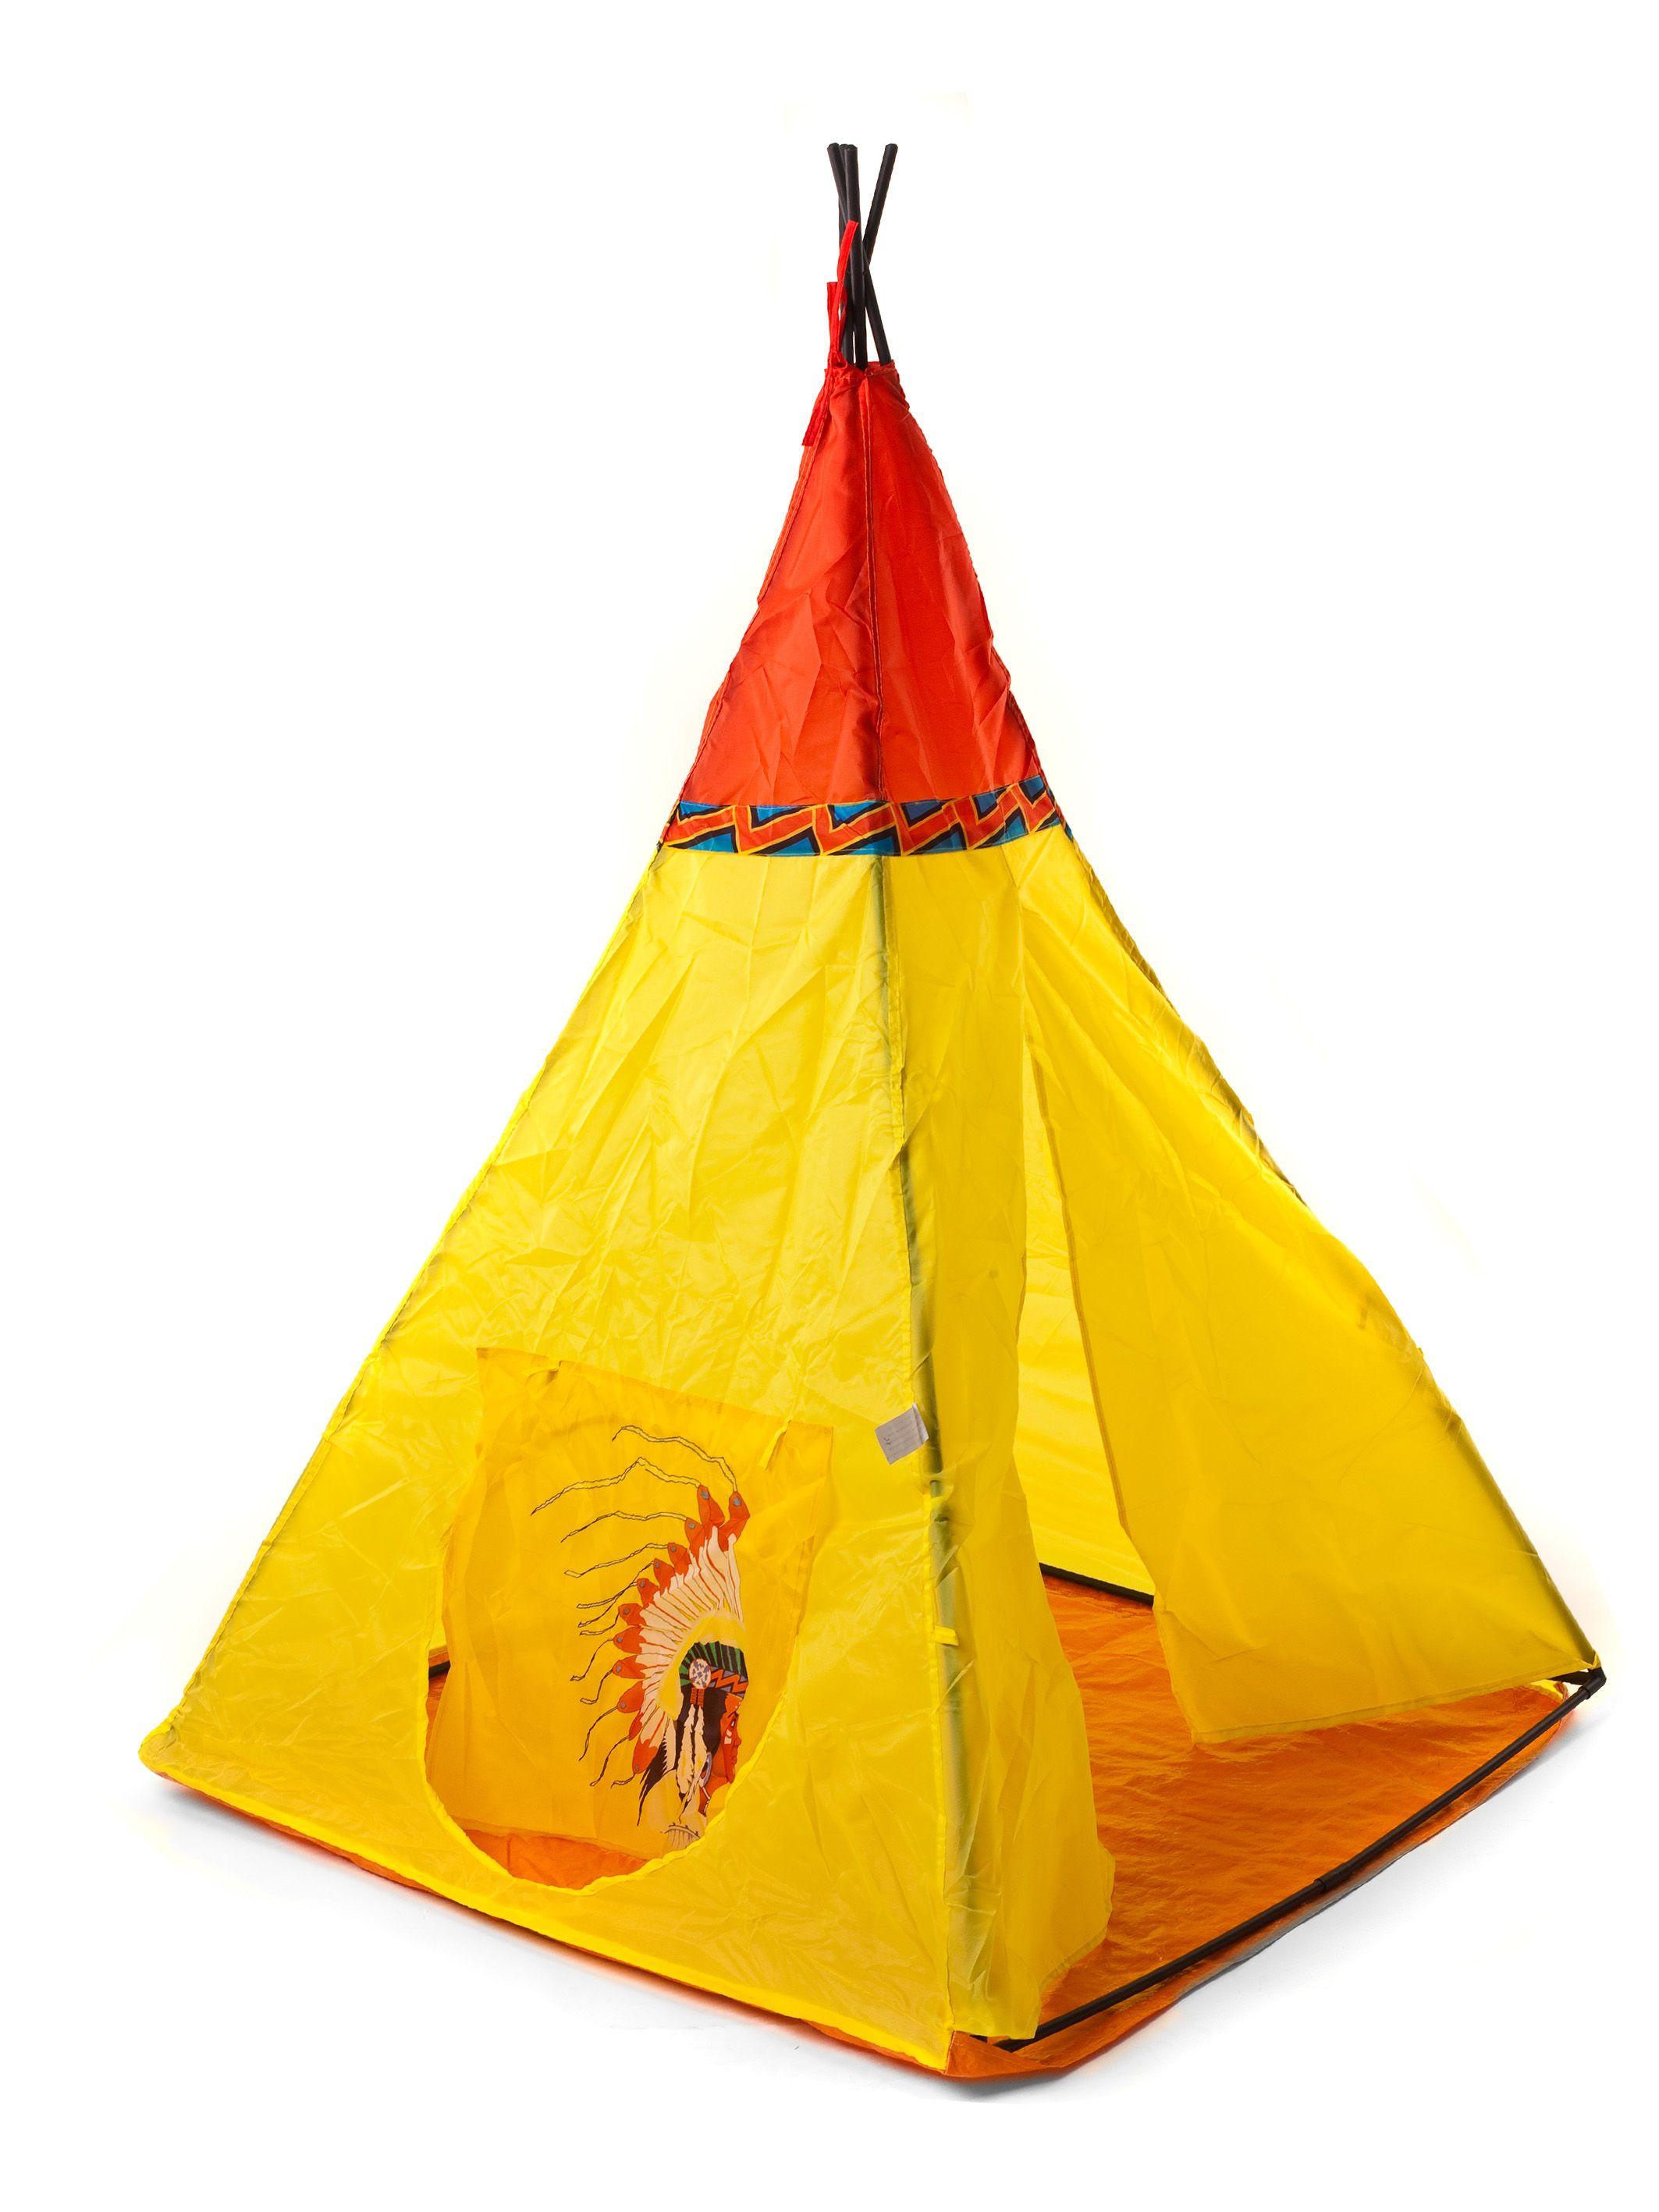 Dziecięcy namiot INDIAN III 100x100x135cm